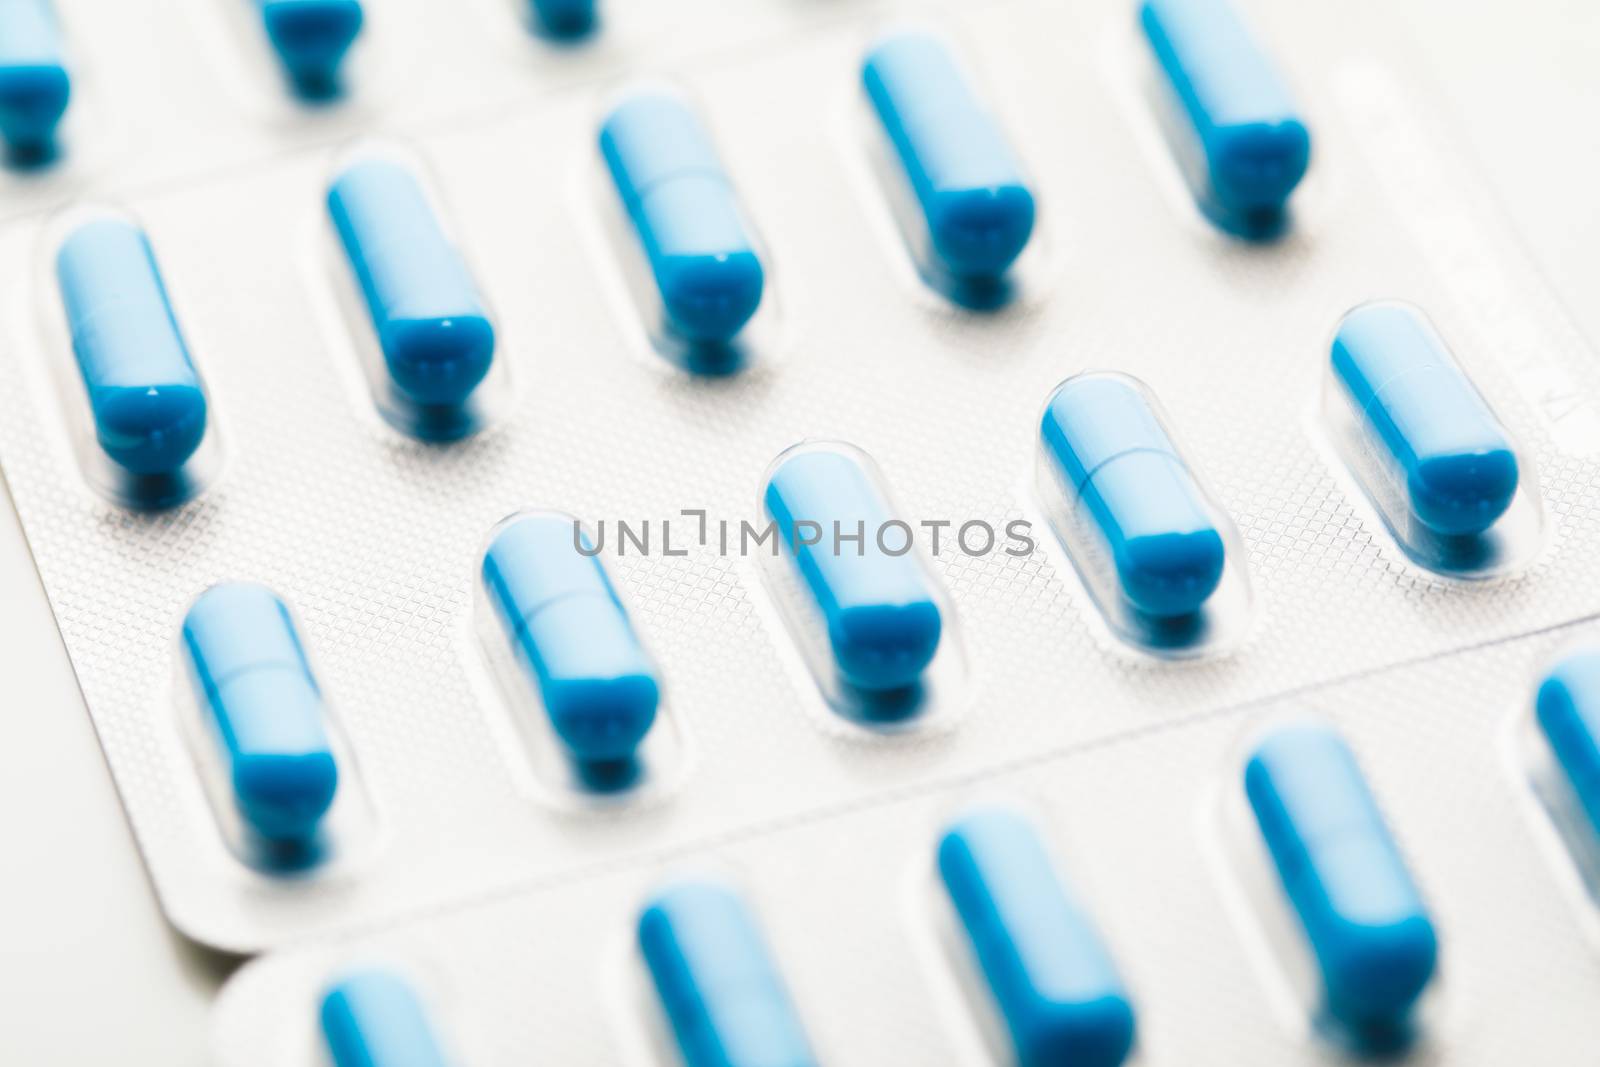 blue capsule pills blister pack